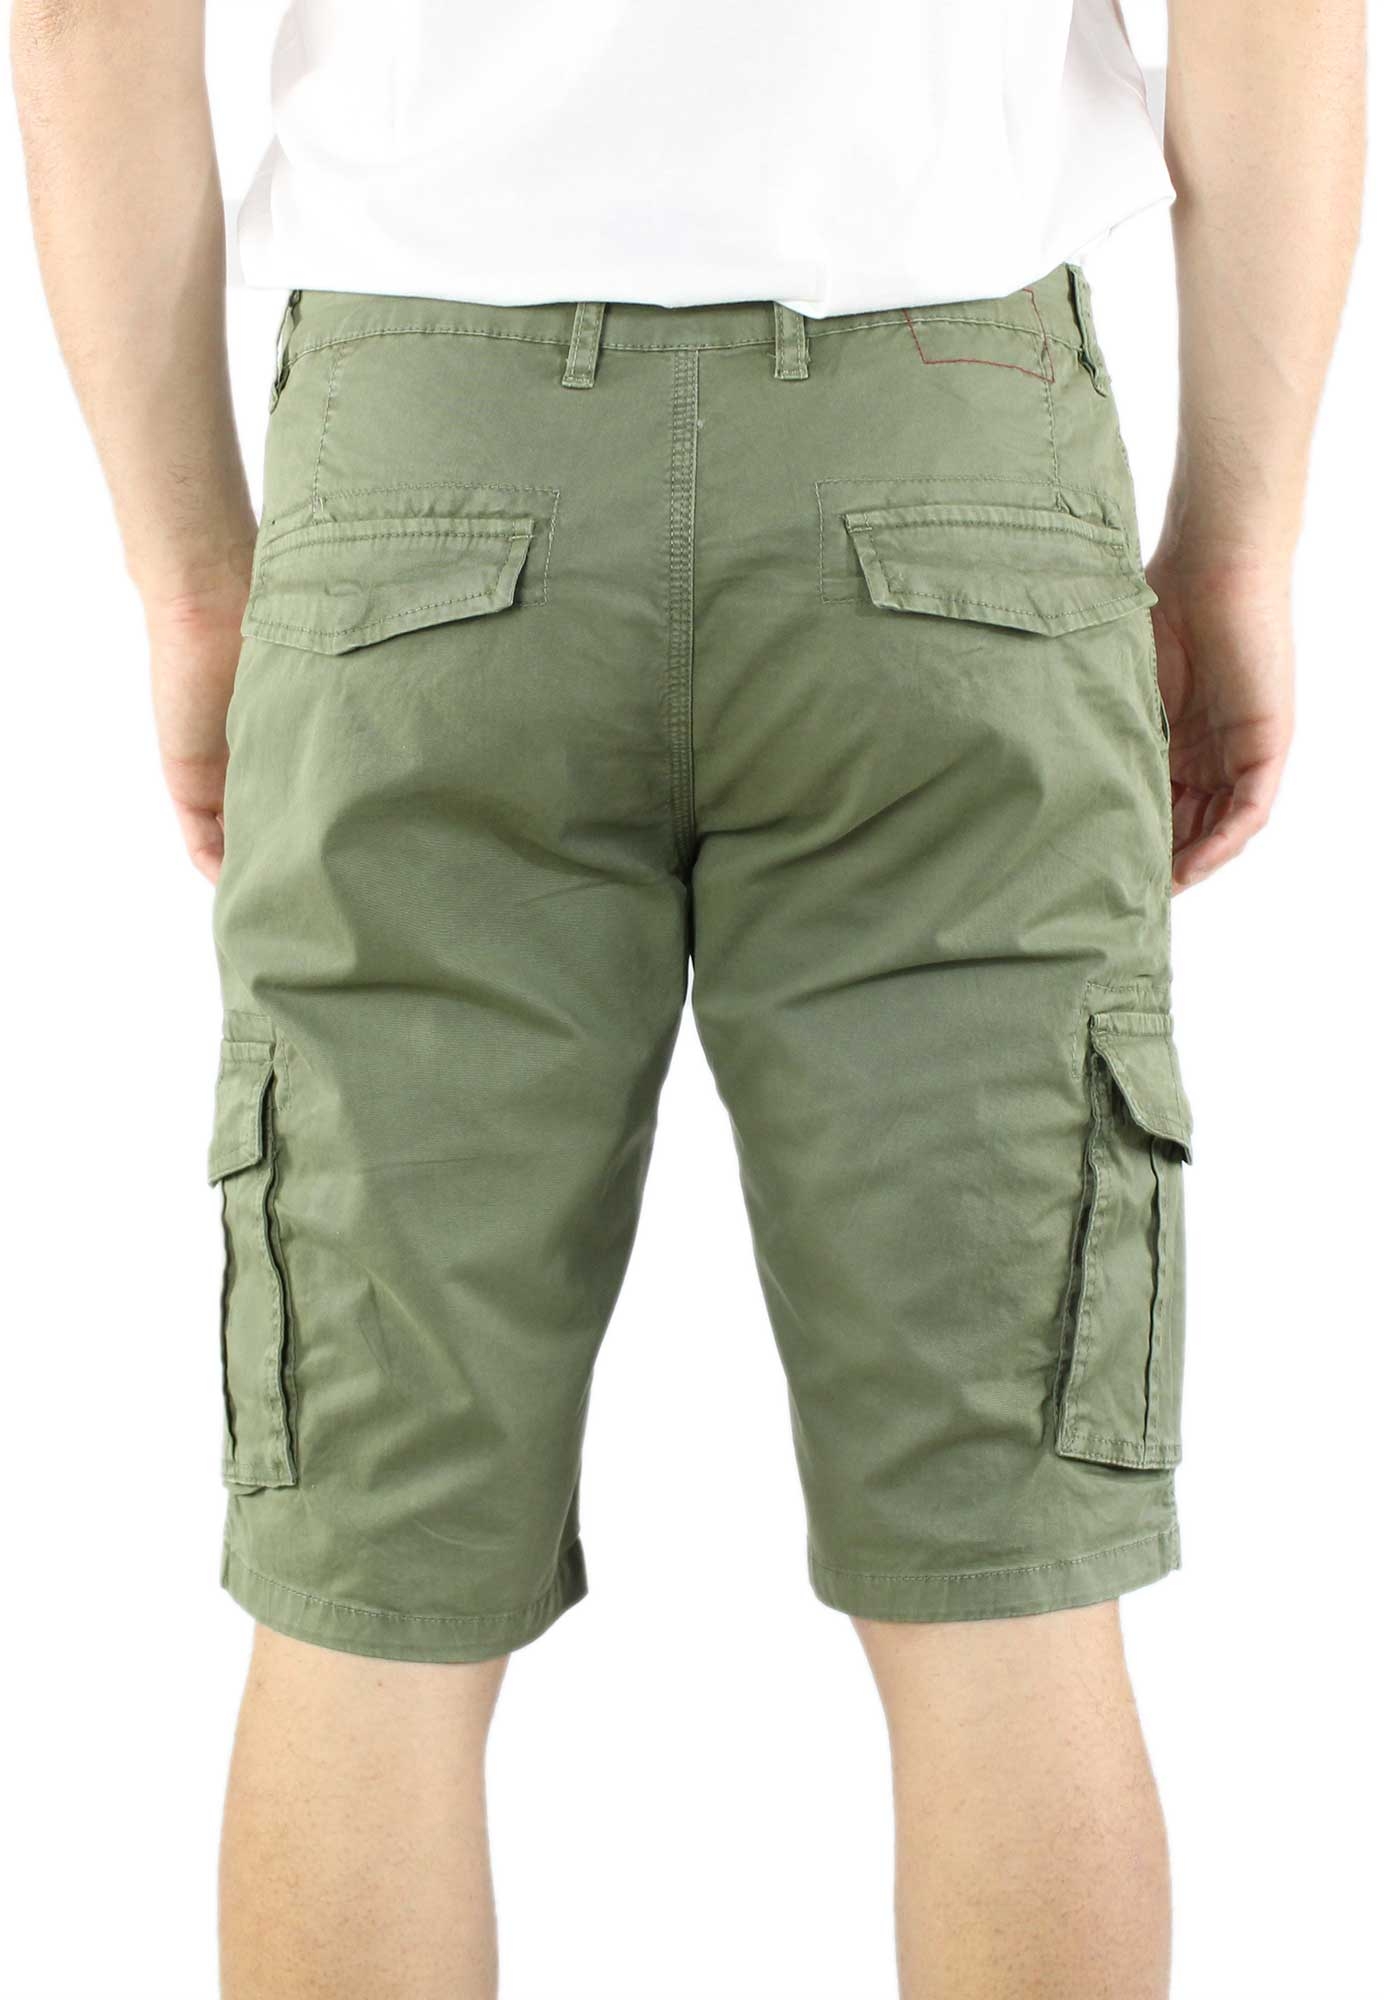 Bermuda Uomo Cargo Cotone Pantalone Corto Jeans Tasconi Laterali Shorts ...